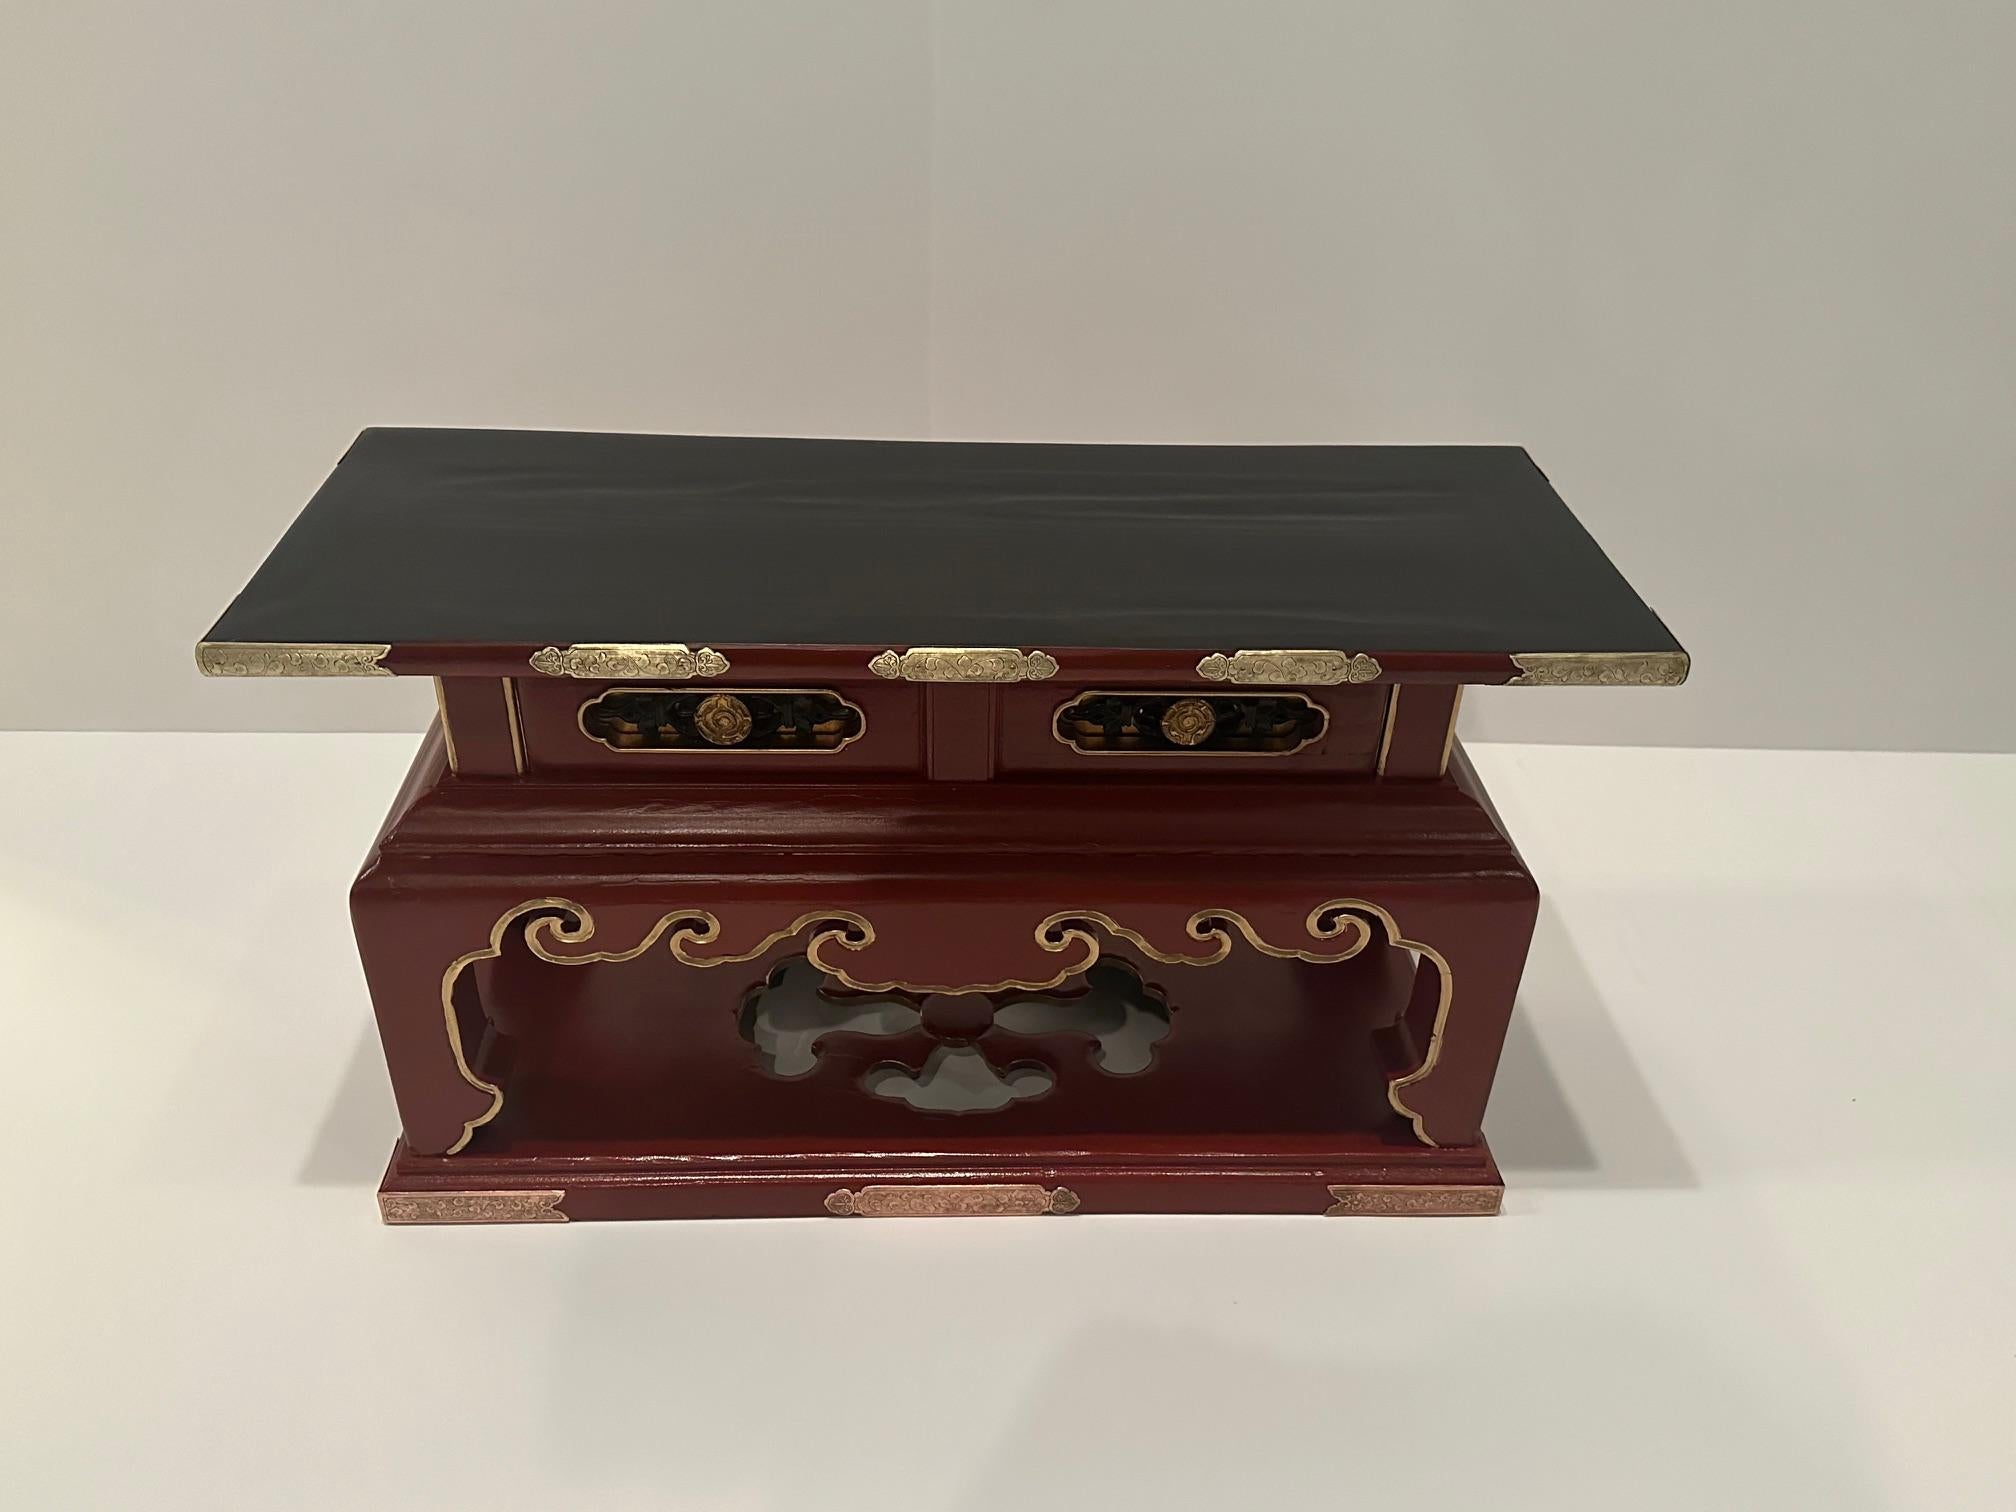 Magnifique table d'autel chinoise vintage laquée noir et rouge avec de beaux accents de laiton et de cuivre et une forme magnifique avec un tiroir,  Fait une fabuleuse table d'appoint.